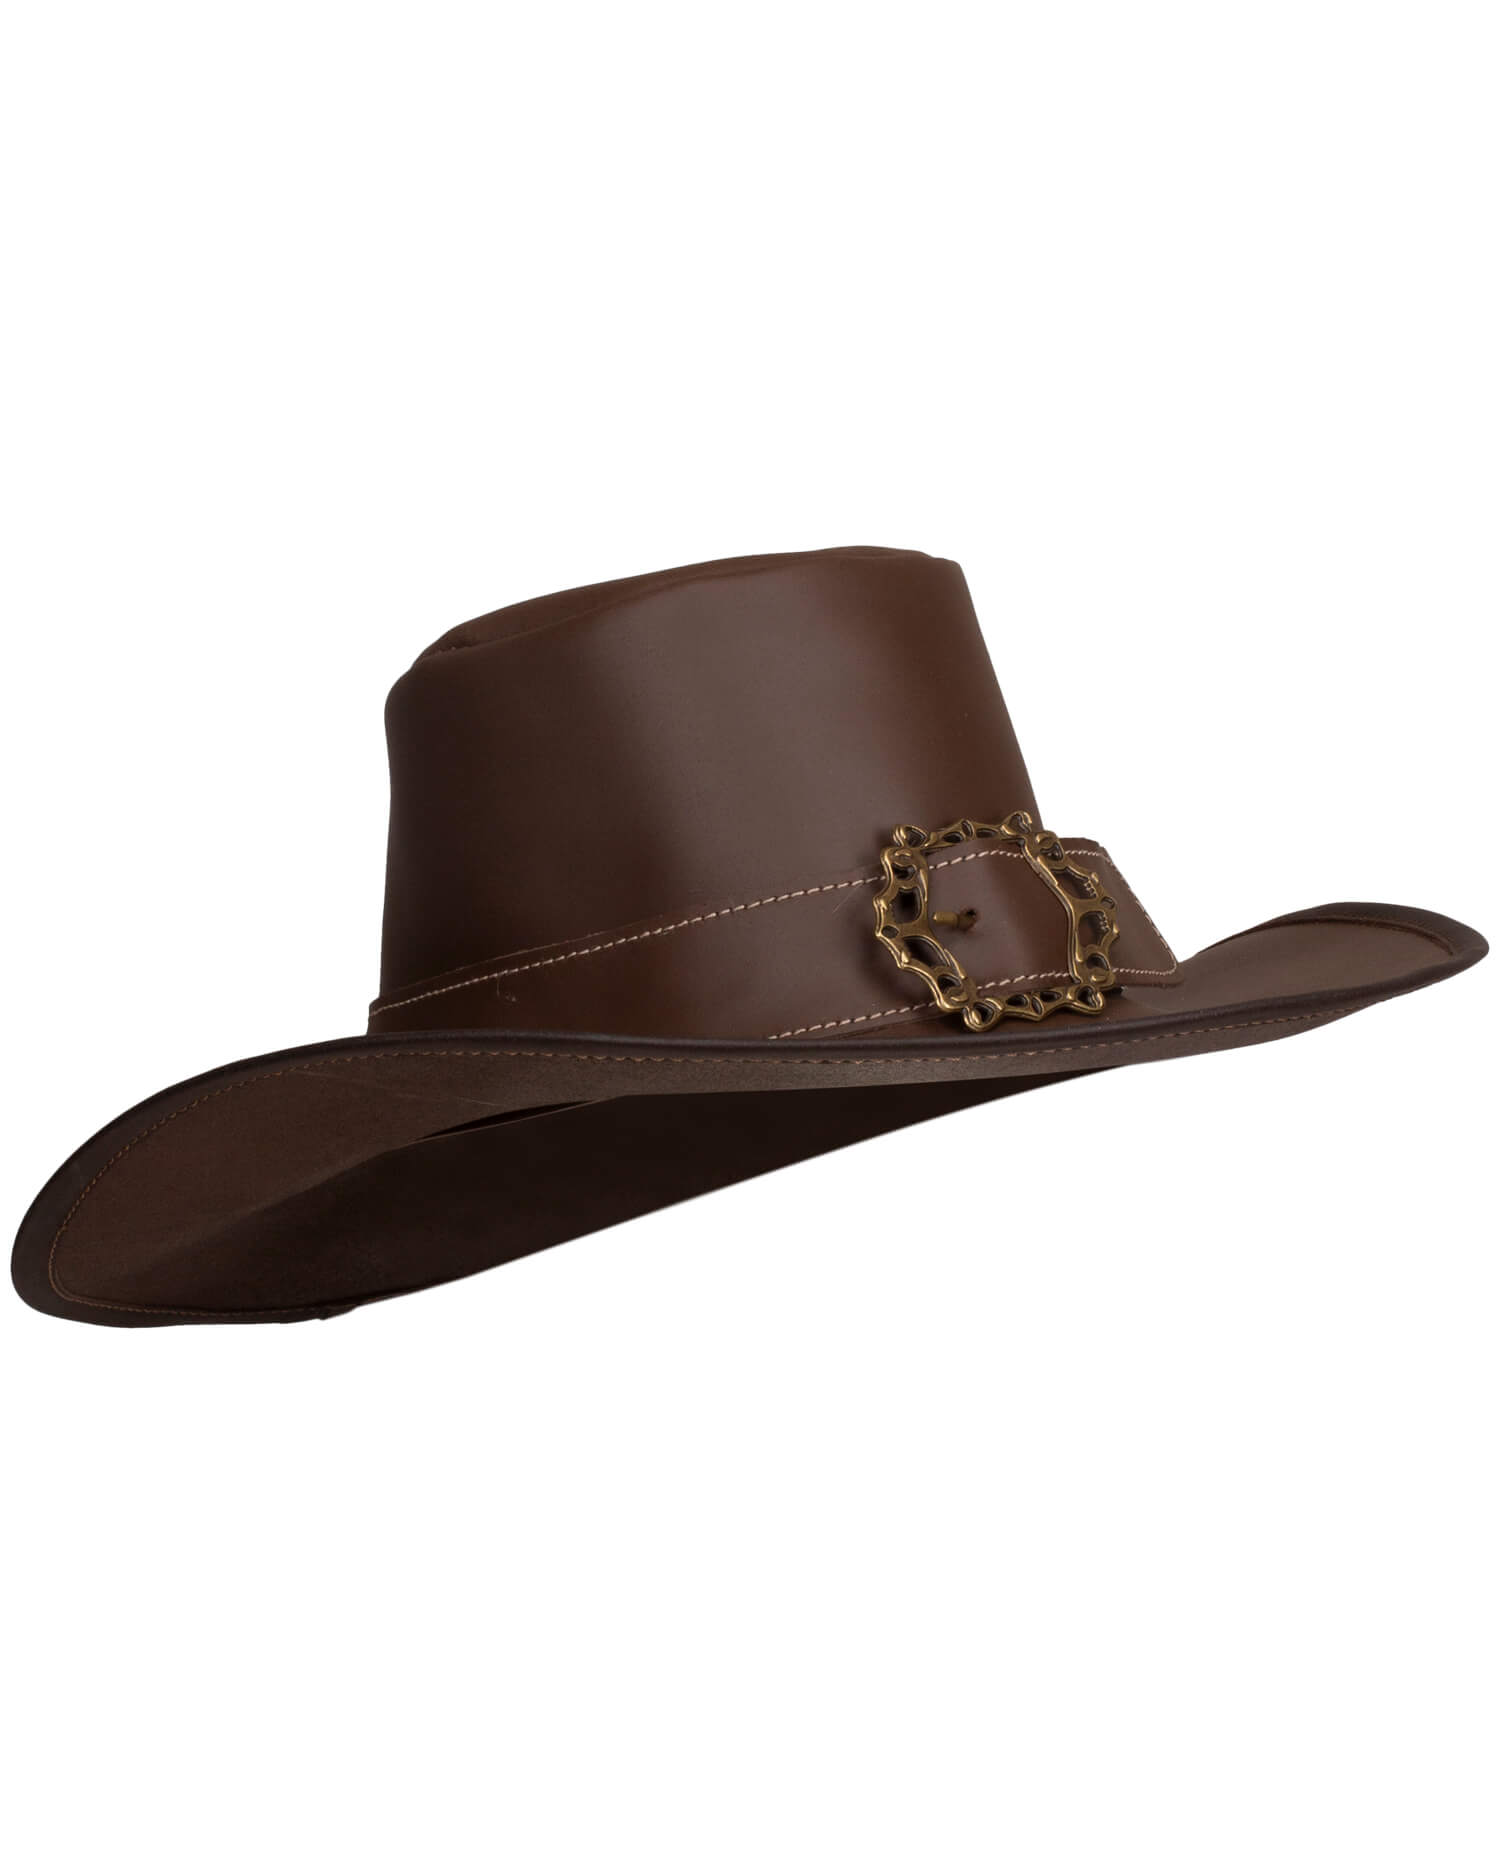 Hidalgo hat